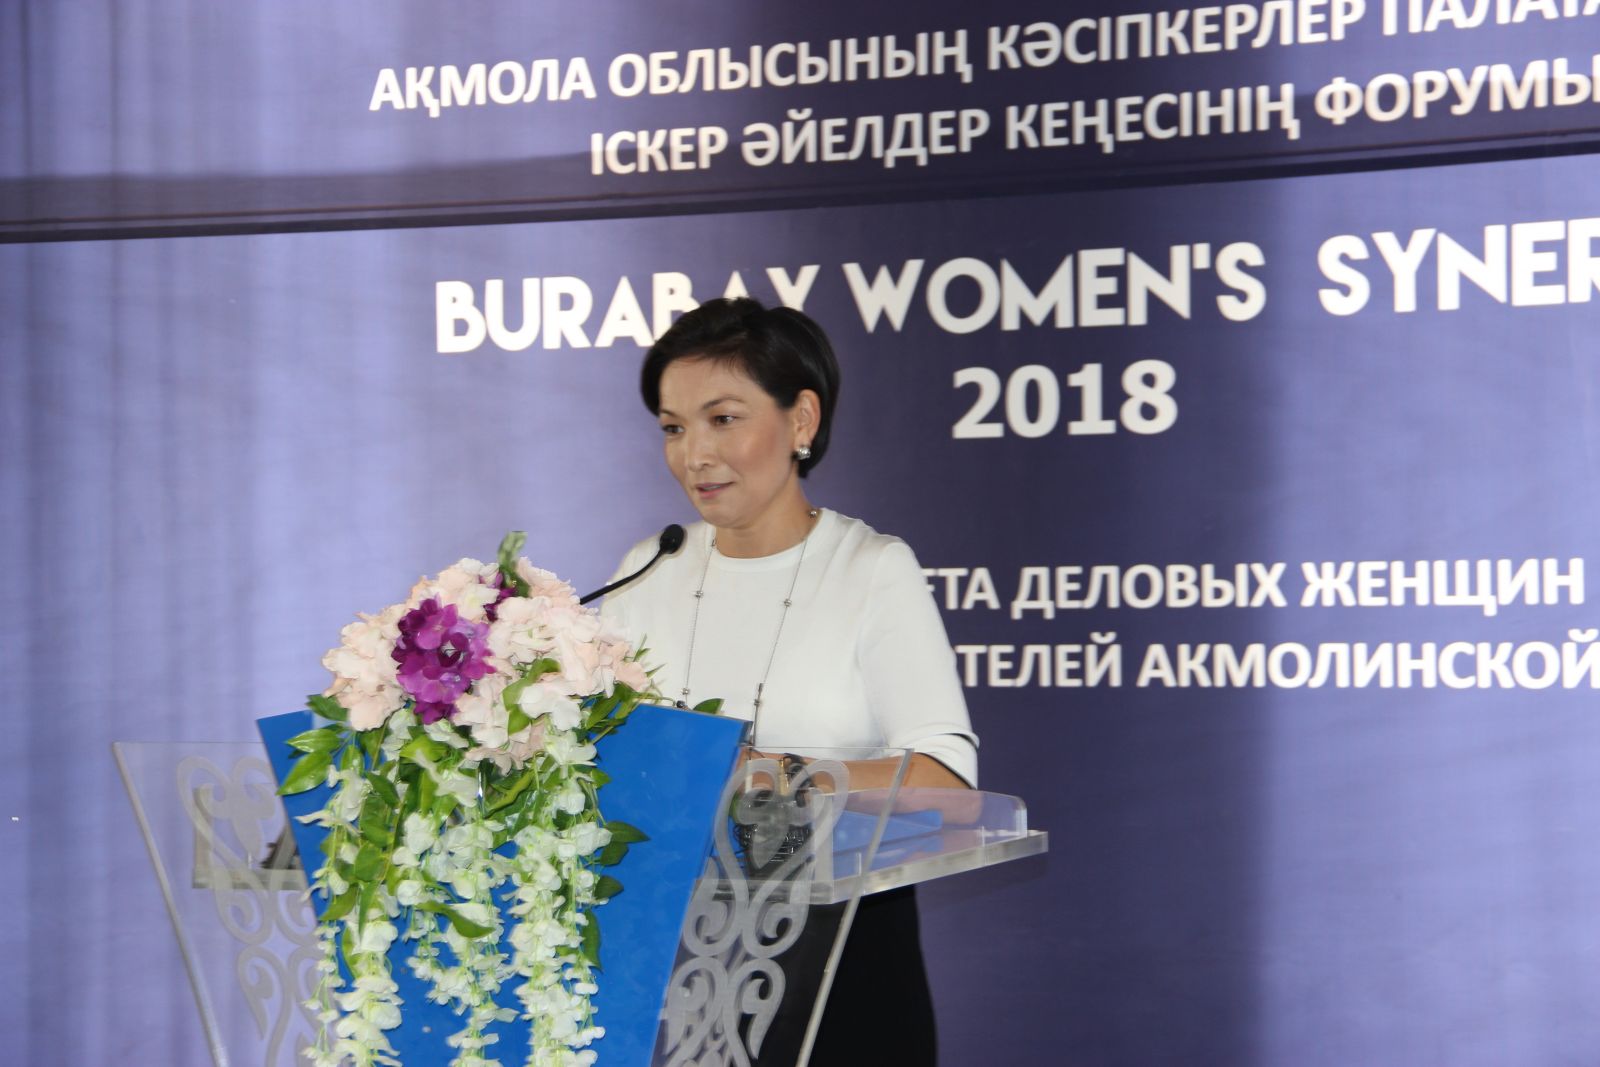 В Боровом впервые прошёл инновационный бизнес-форум для женщин Burabay Women's Synergy  